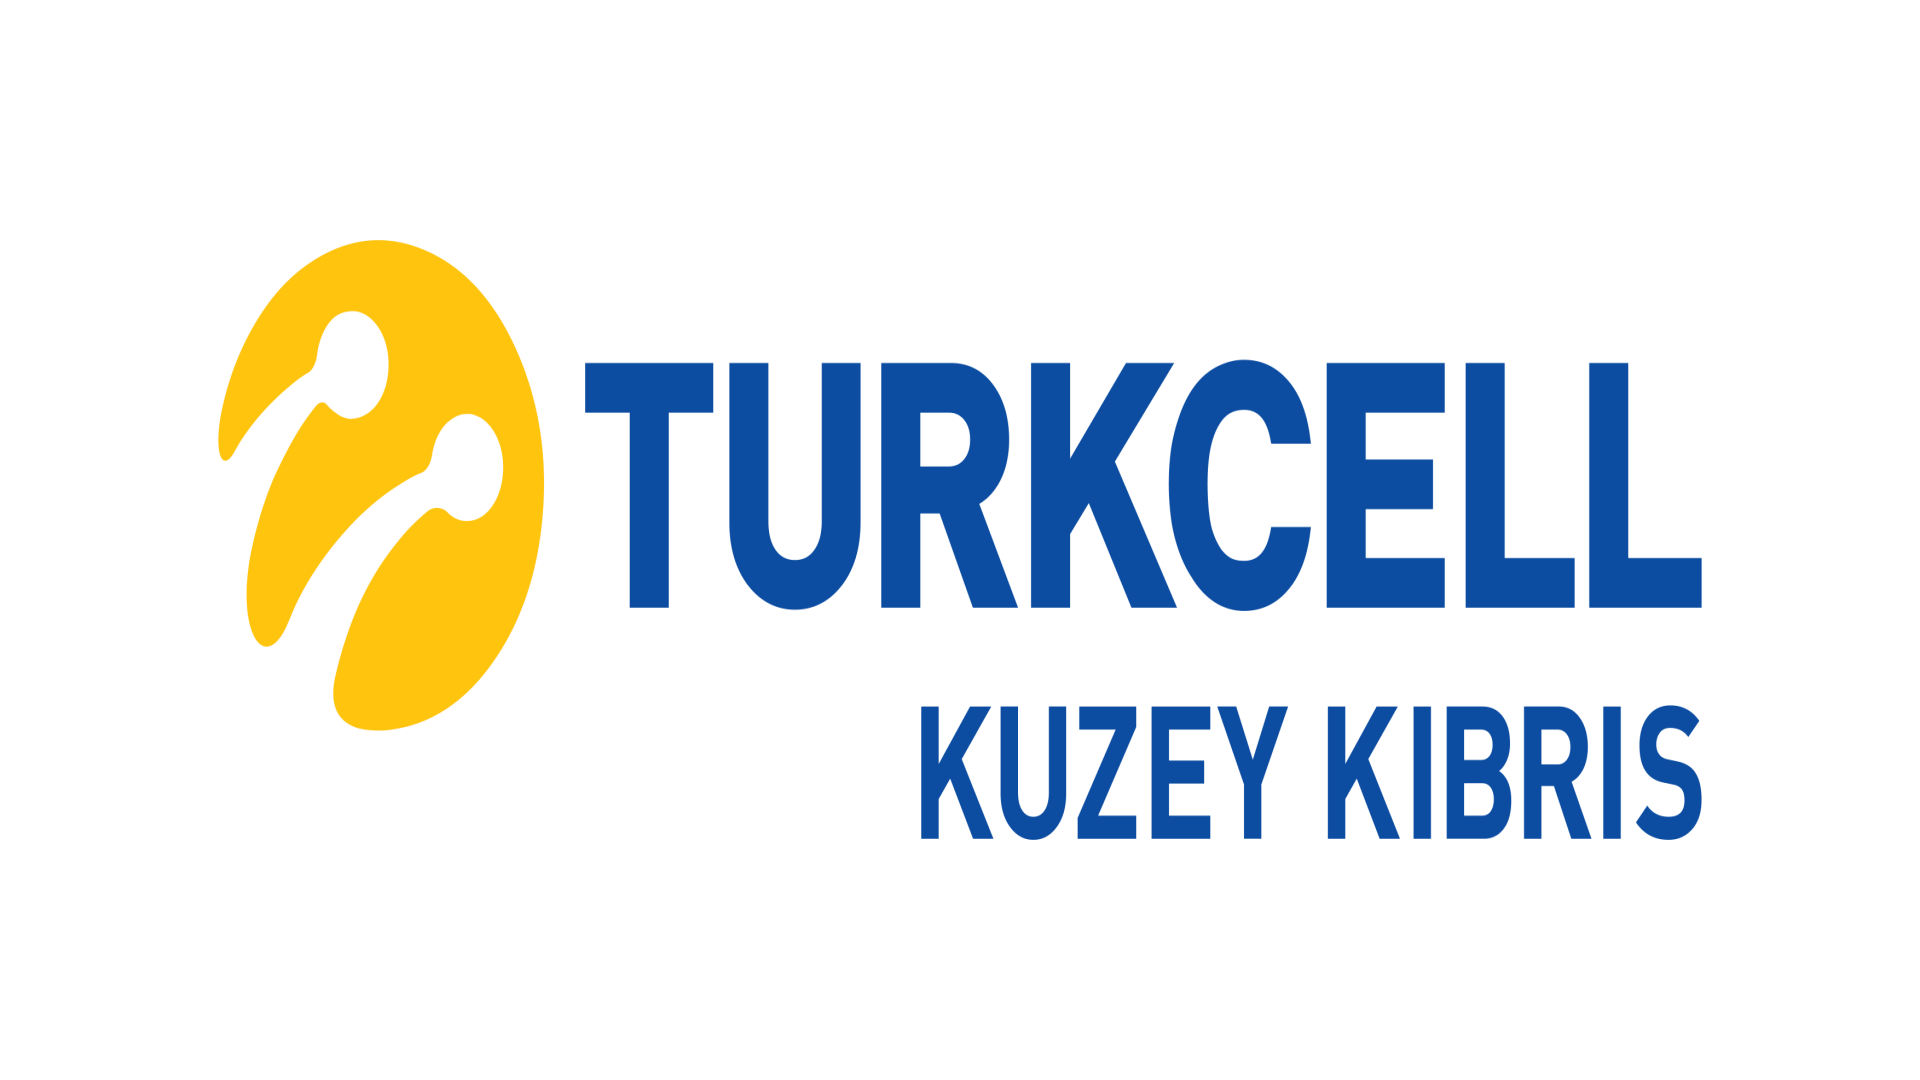 https://otomatica.com/wp-content/uploads/2022/01/TurkcellKuzeyKibris_1920X1080.png